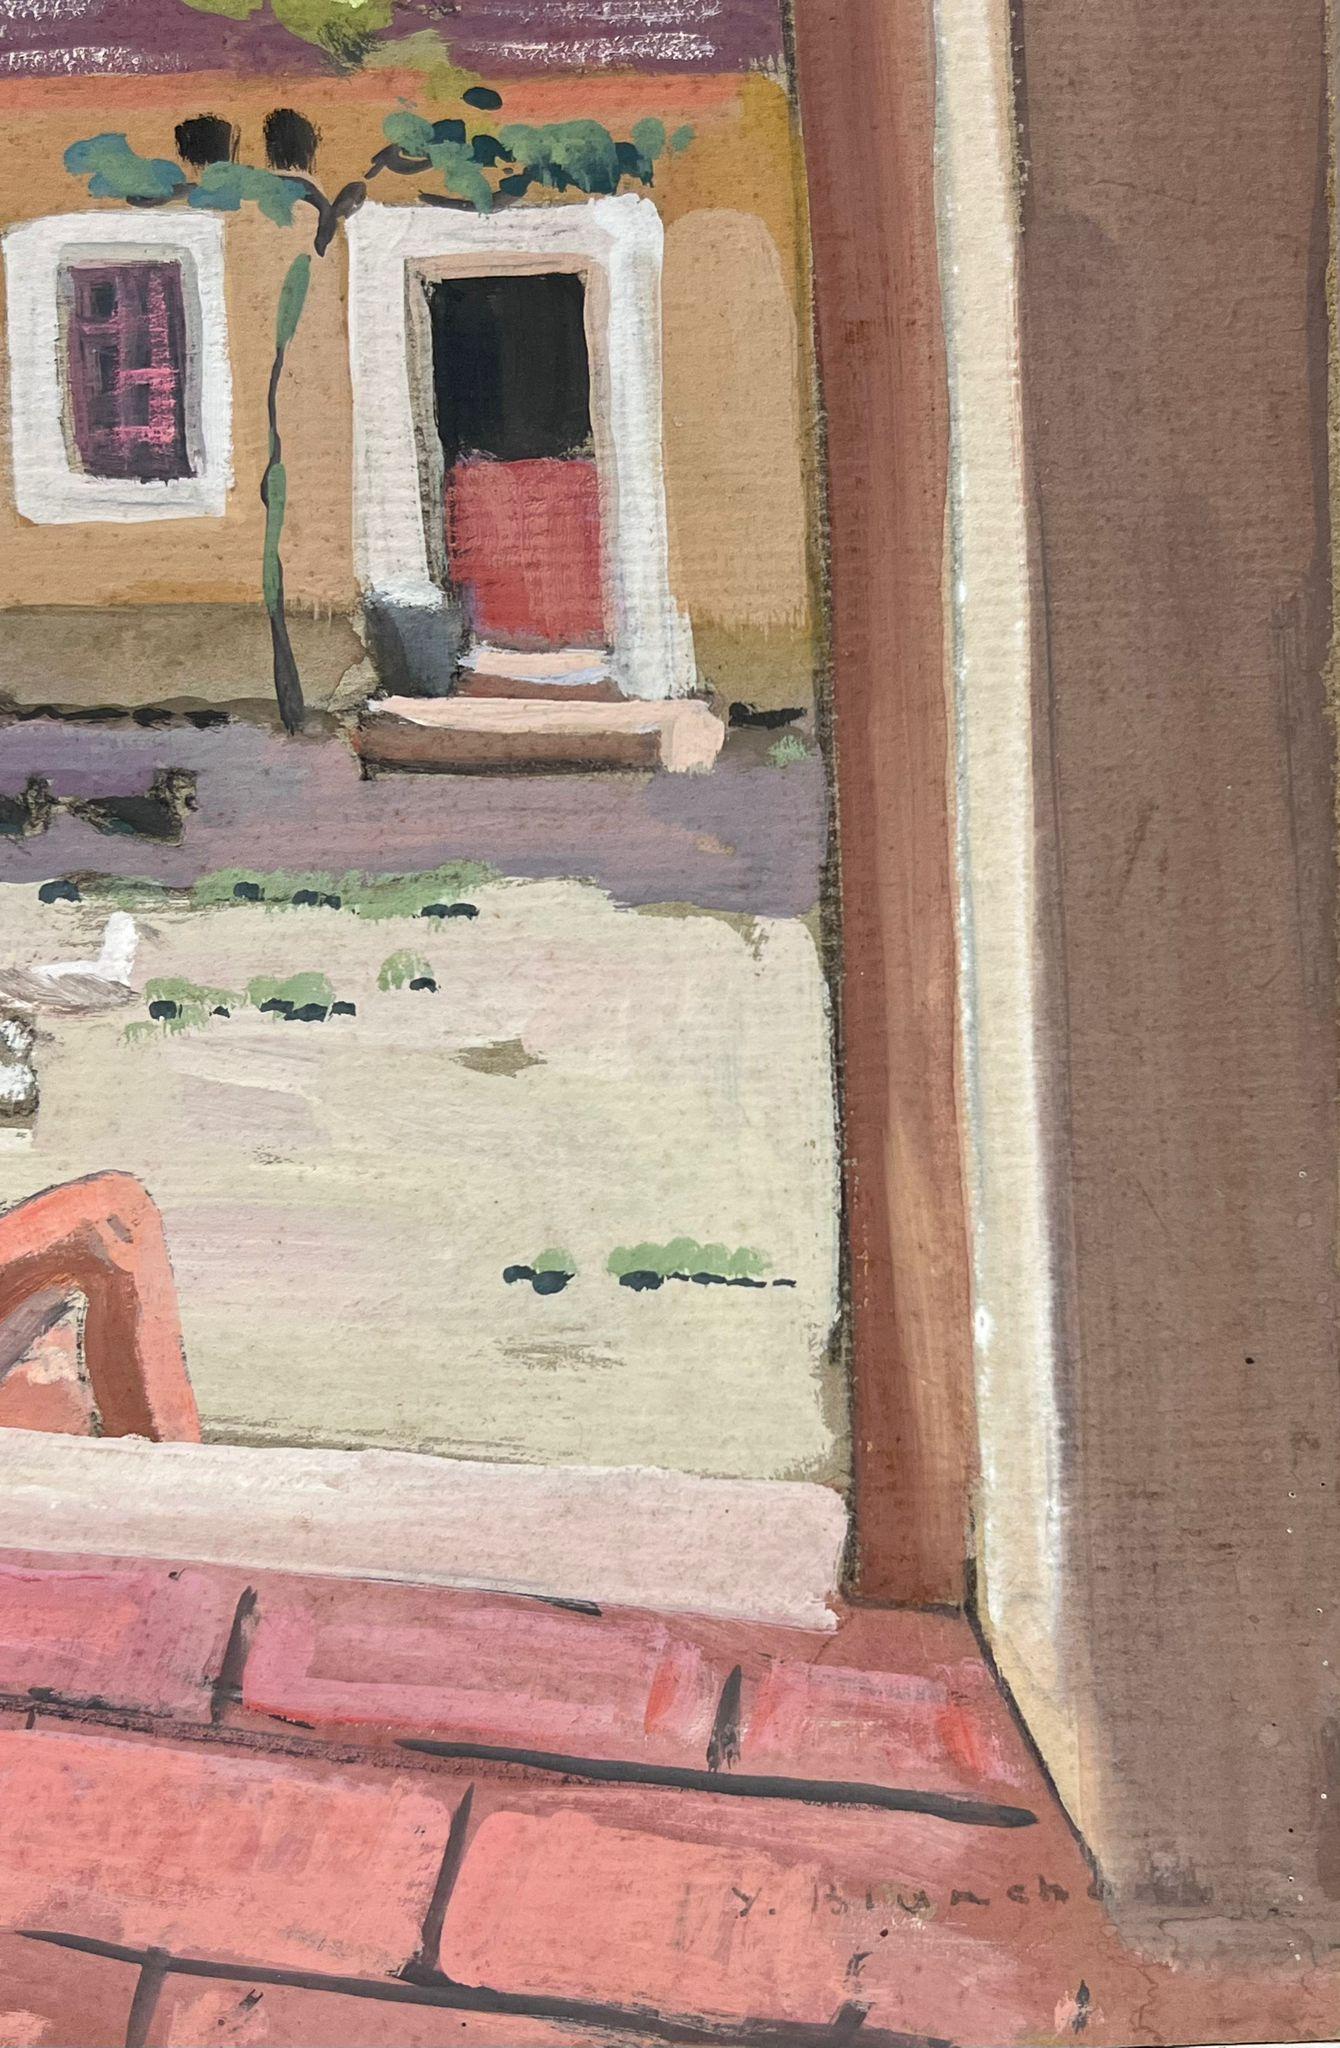 Mannequin impressionniste français des années 1930 encadré de porte de maison en pierre rose  - Painting de Y. Blanchon